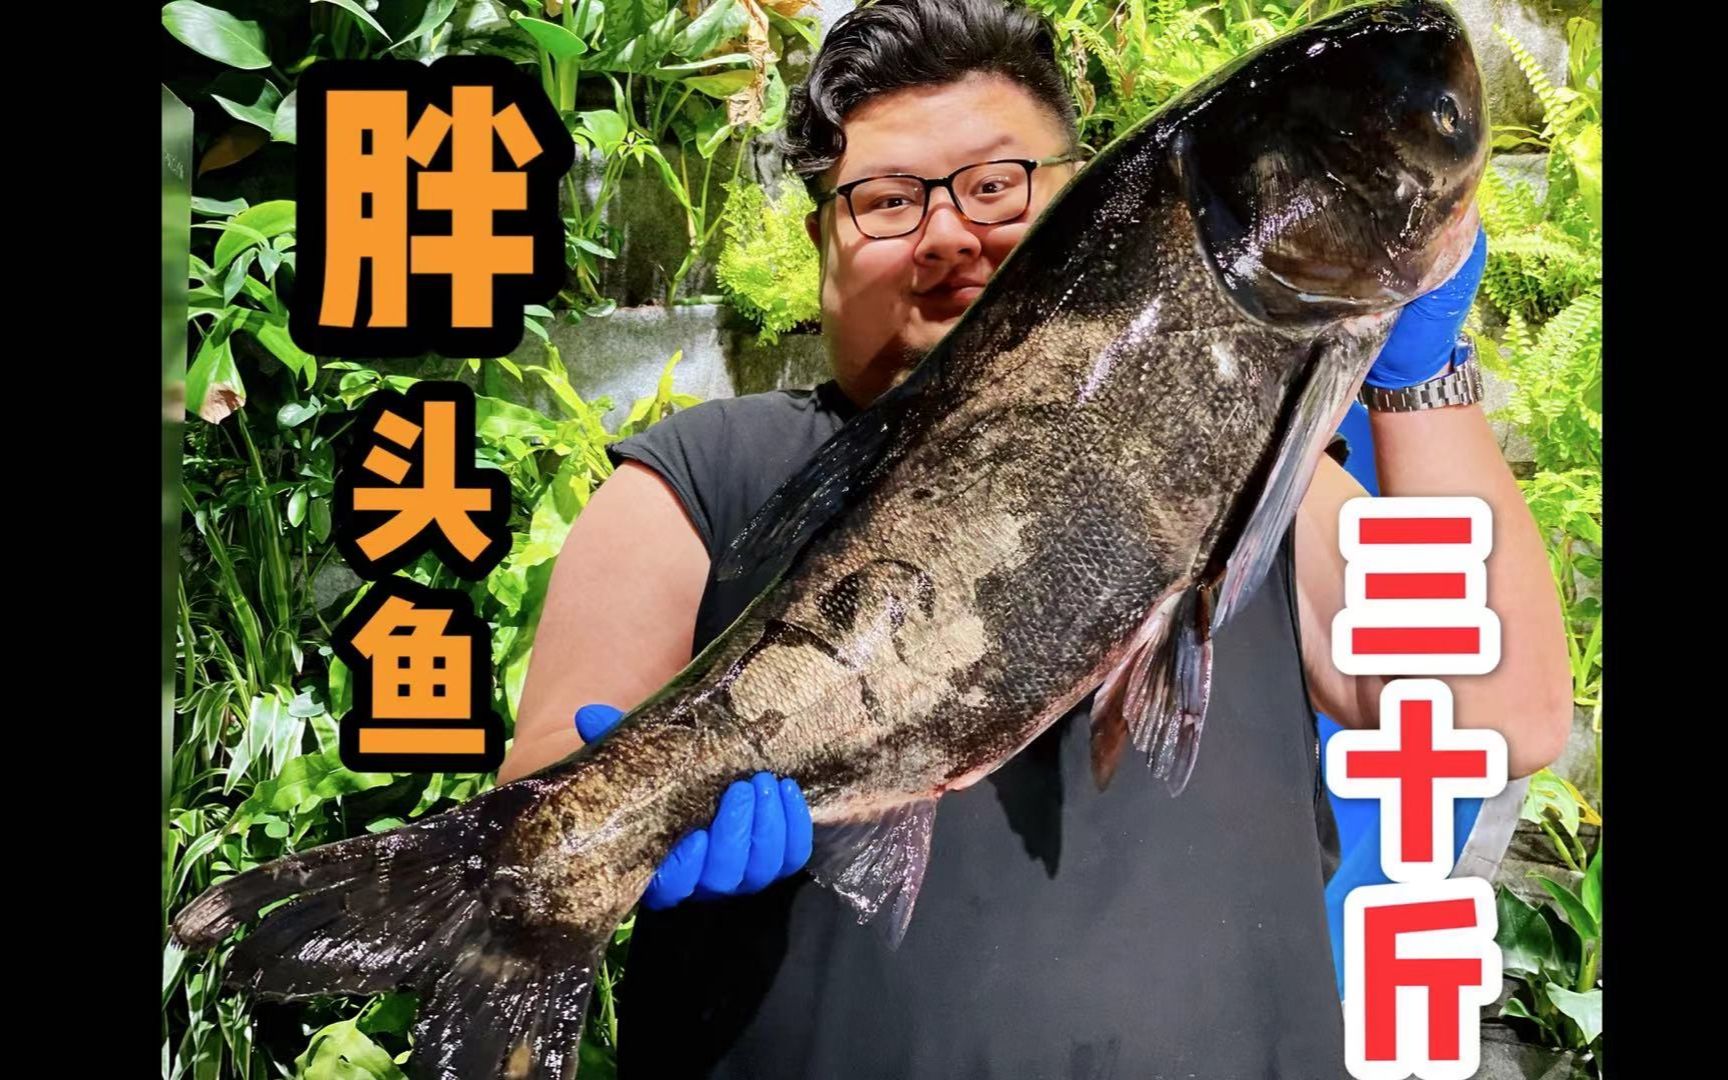 朋友送来一条巨型胖头鱼，居然把刀子都砍坏了！~~~S2110-HA257